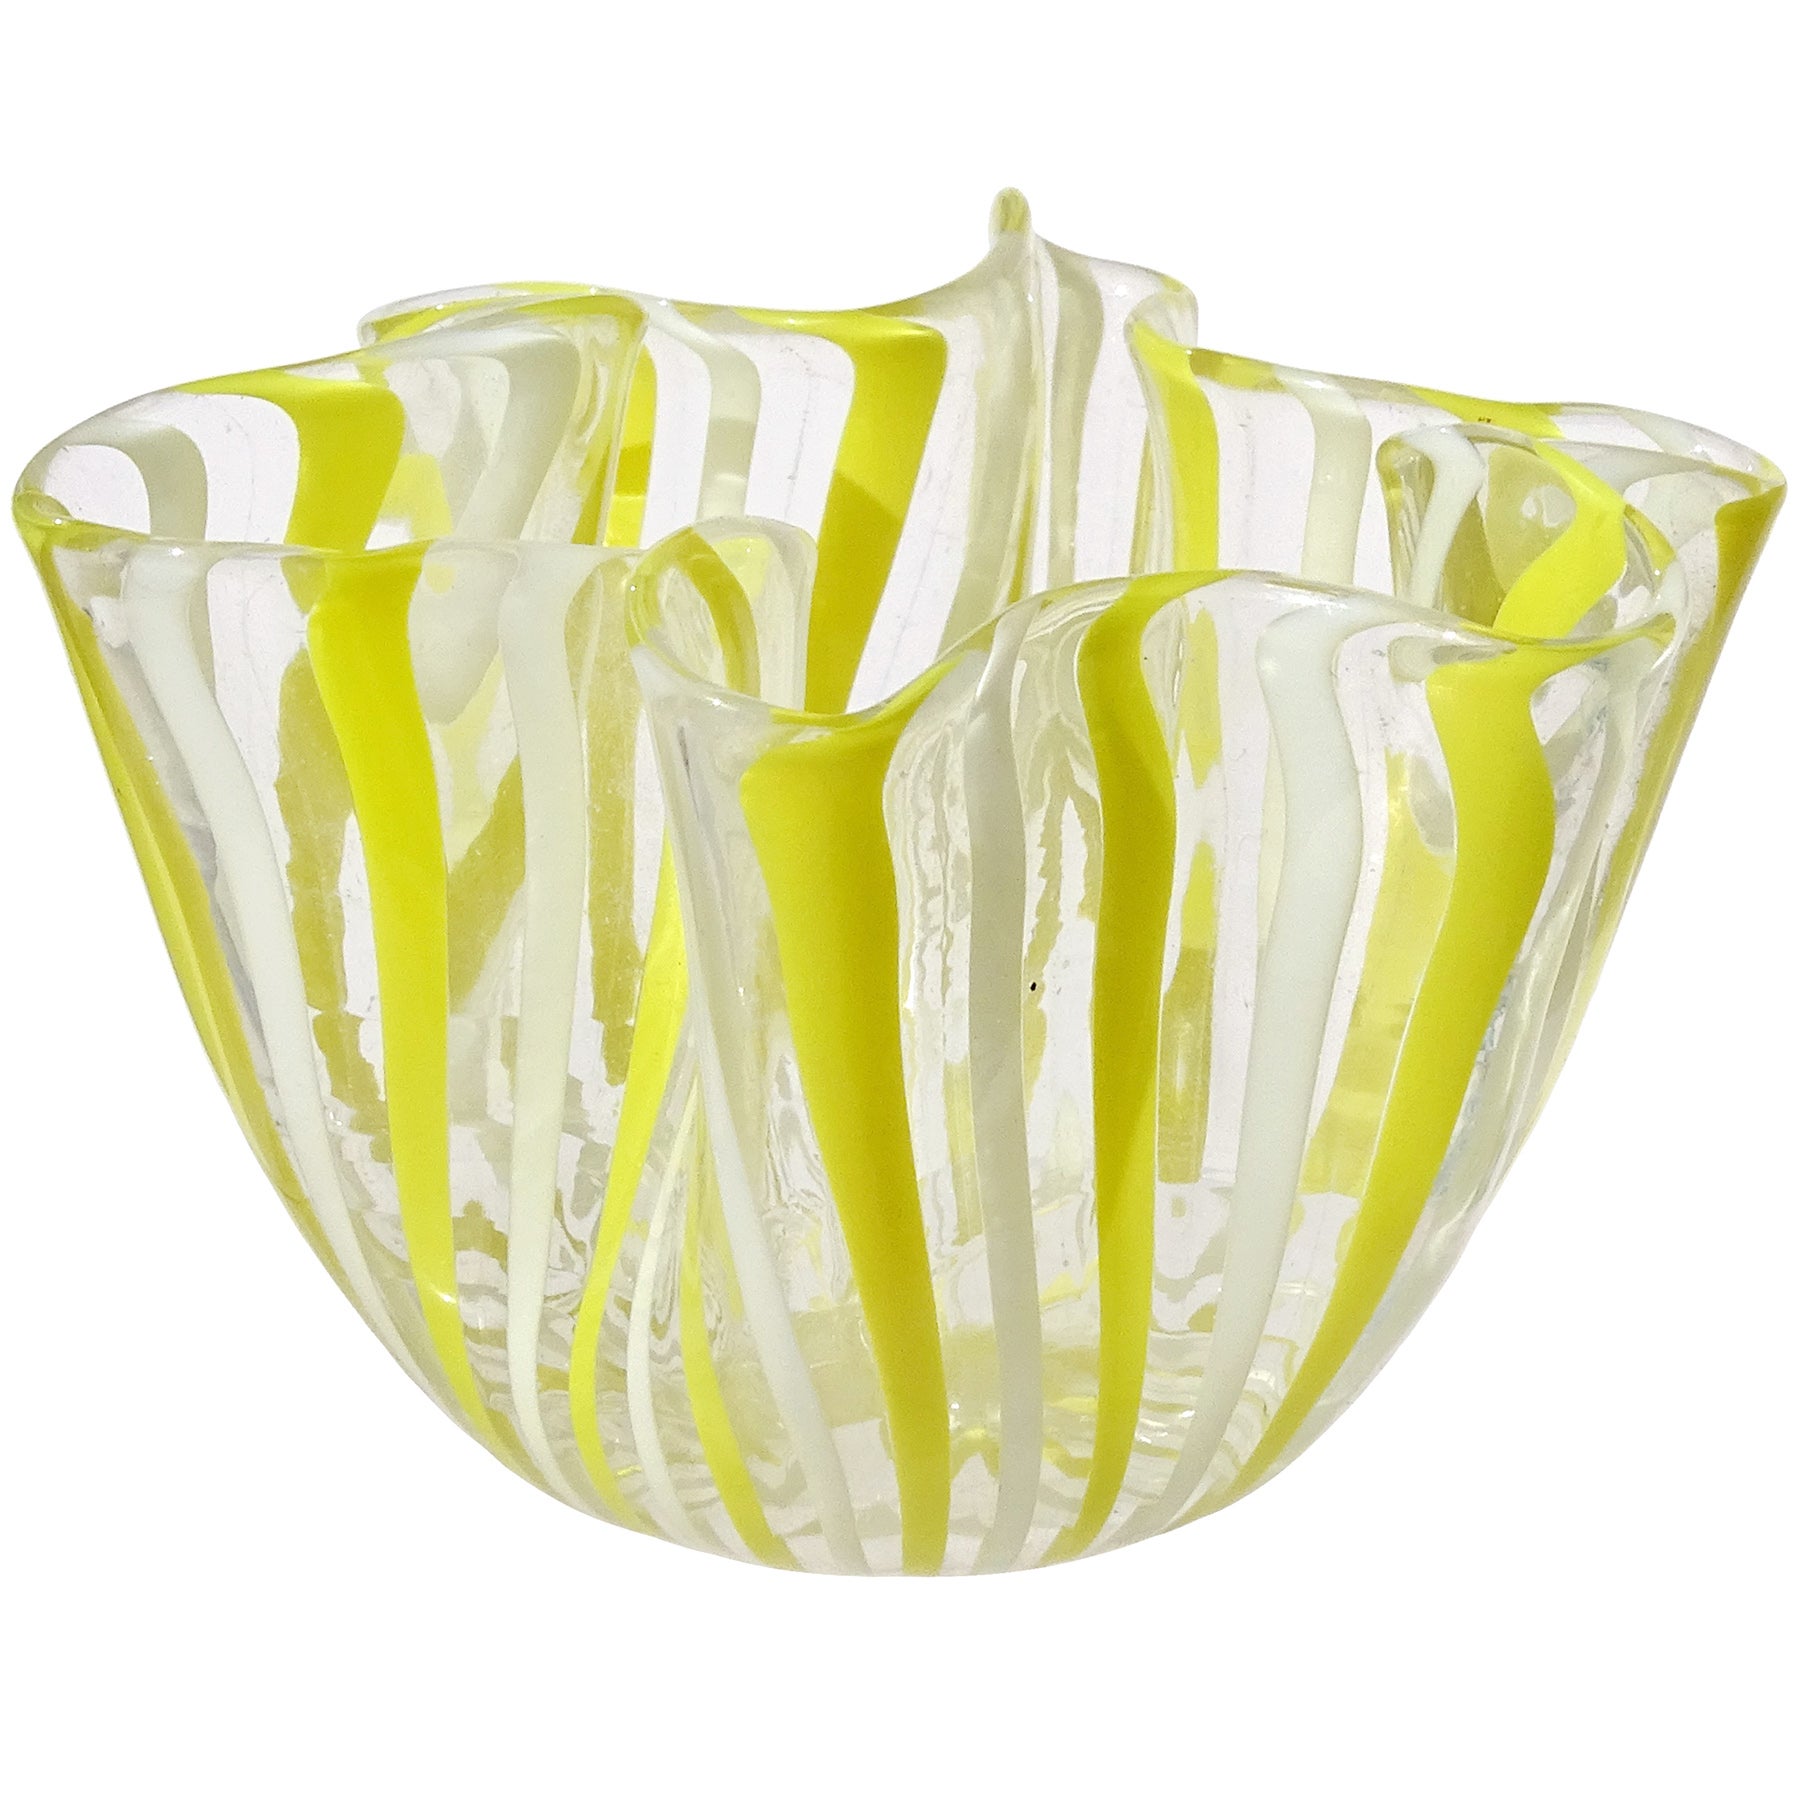 Vase Fazzoletto de Venini Bianconi Murano en verre d'art italien à rubans jaunes et blancs